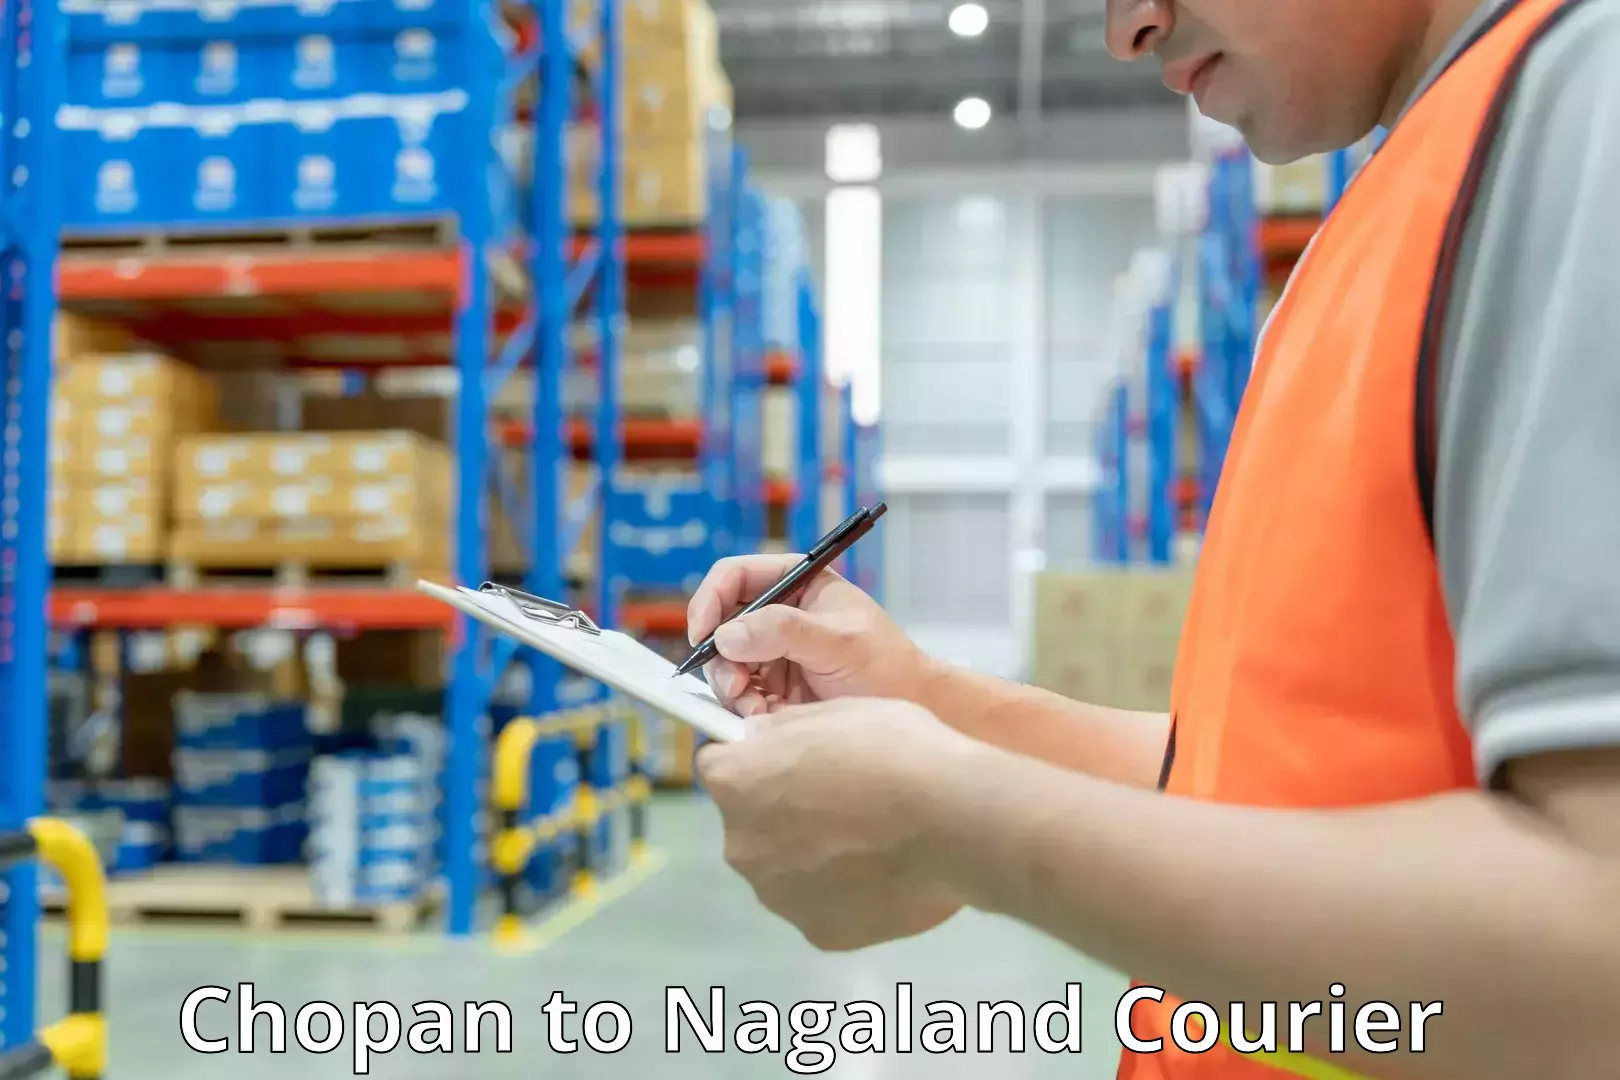 Baggage shipping experts Chopan to Nagaland